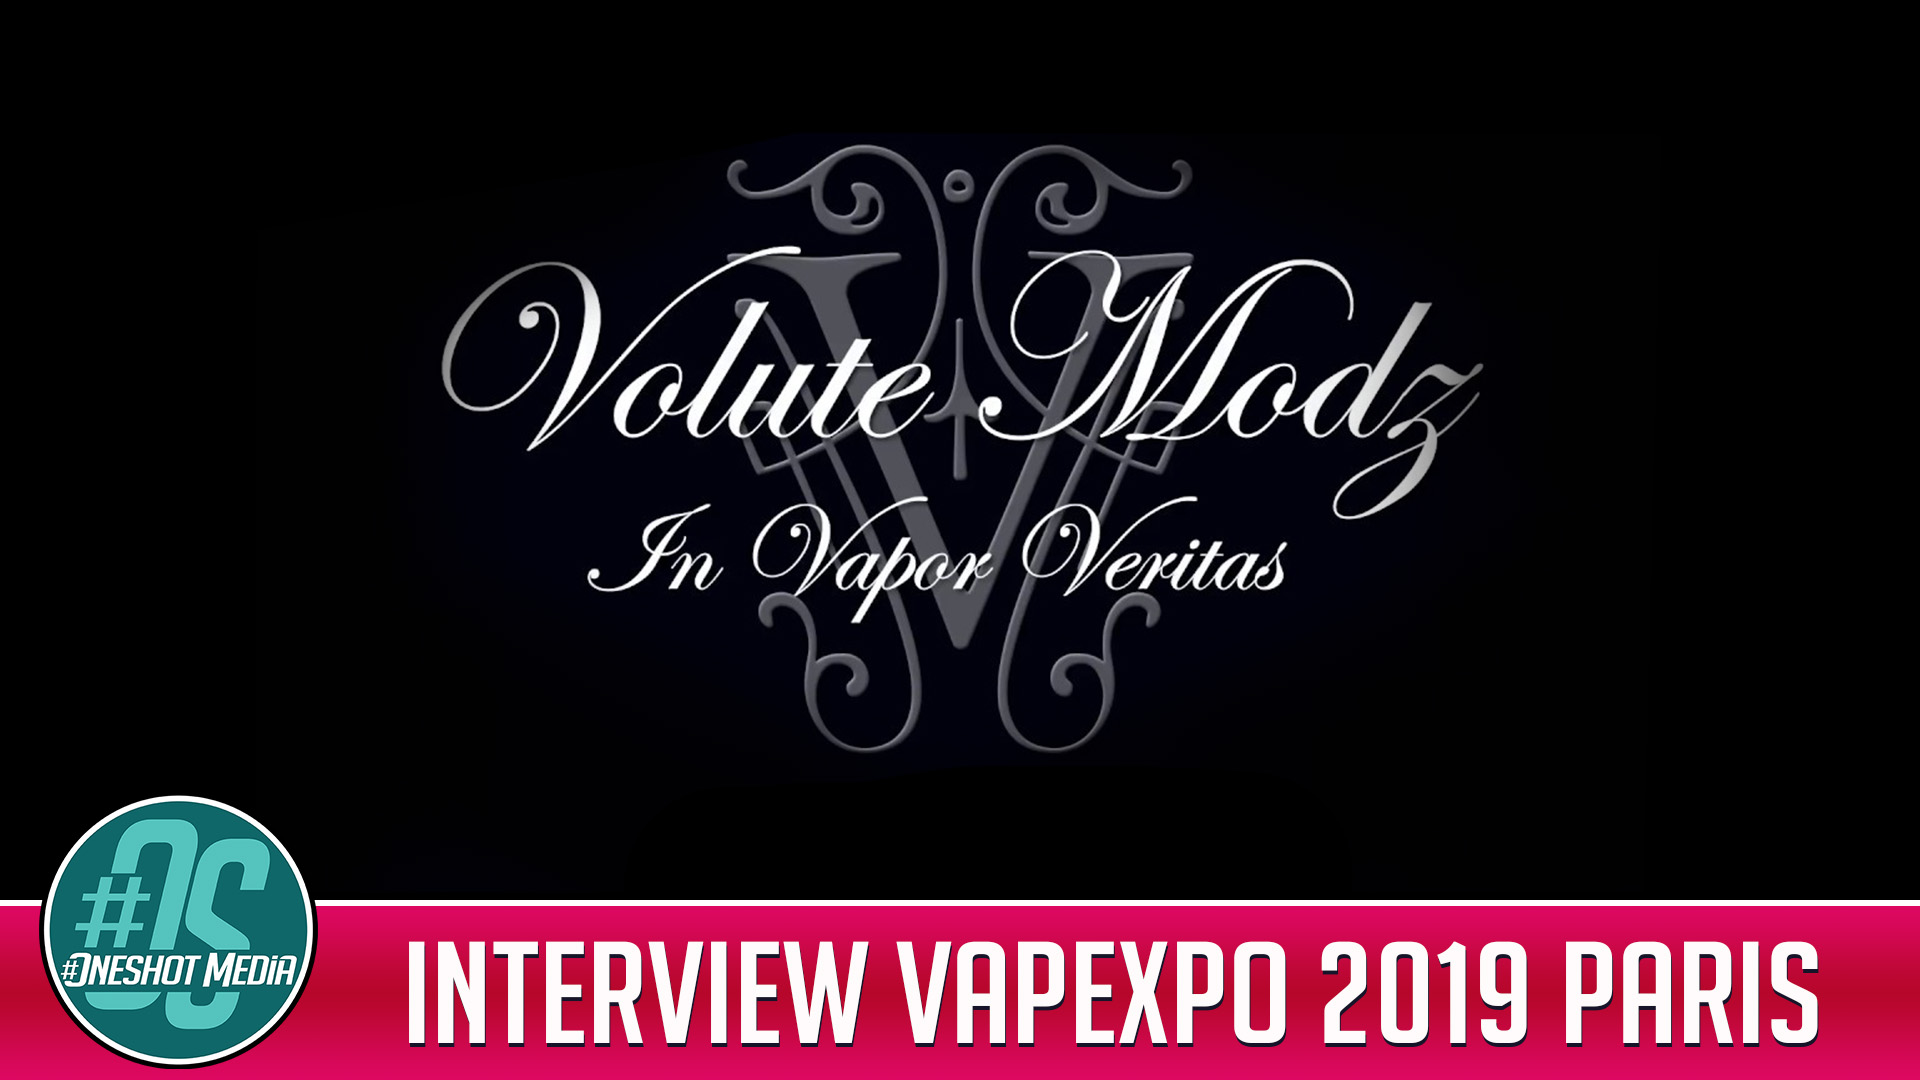 interview volute mods vapexpo paris 2019